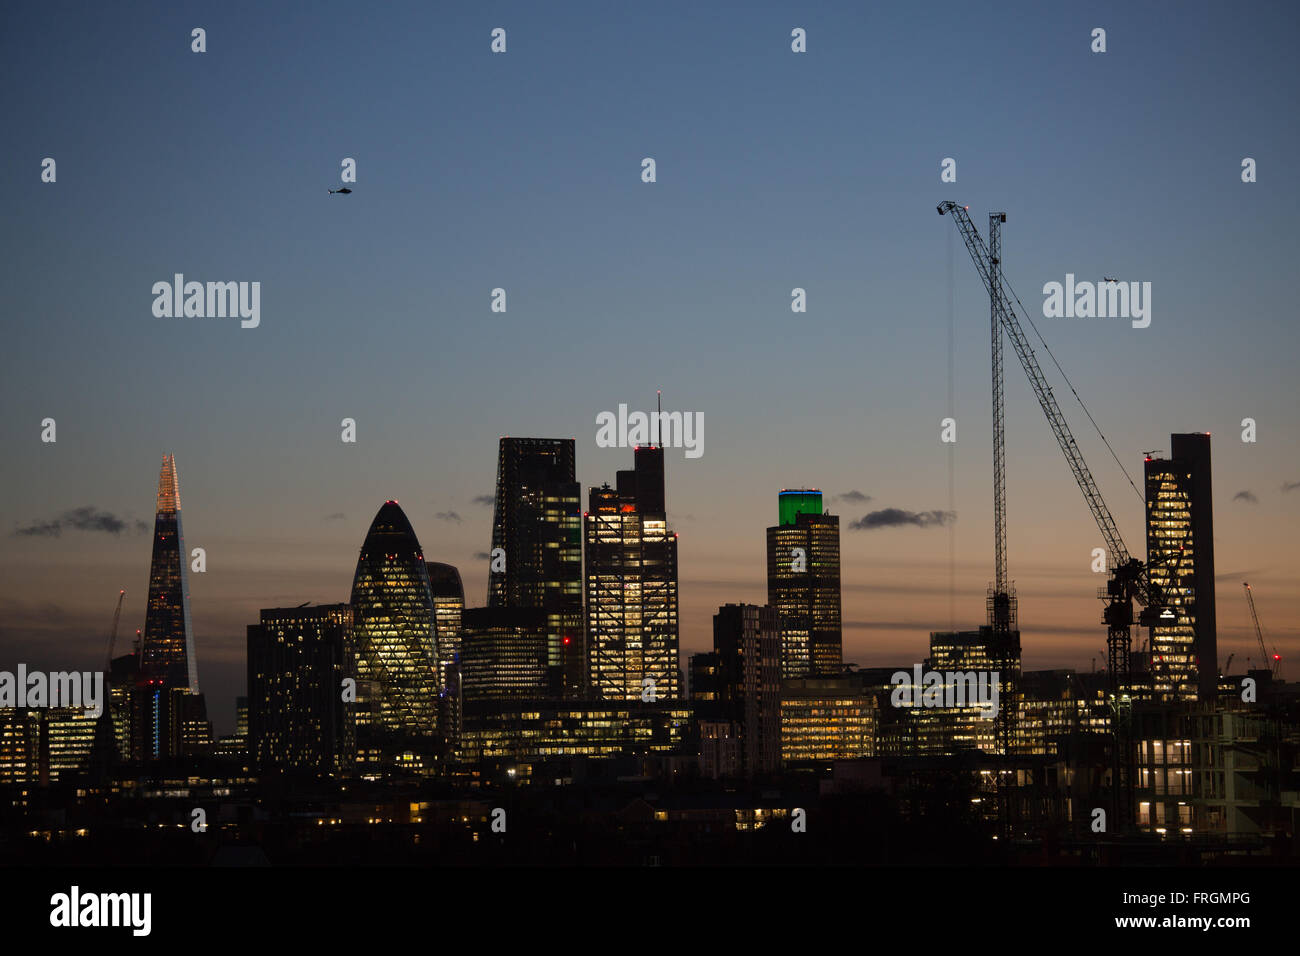 Die Sonne geht unter, auf der City of London und die Lichter sind an, gesehen von Hackney, East London. Ein Hubschrauber schwebt über. Stockfoto